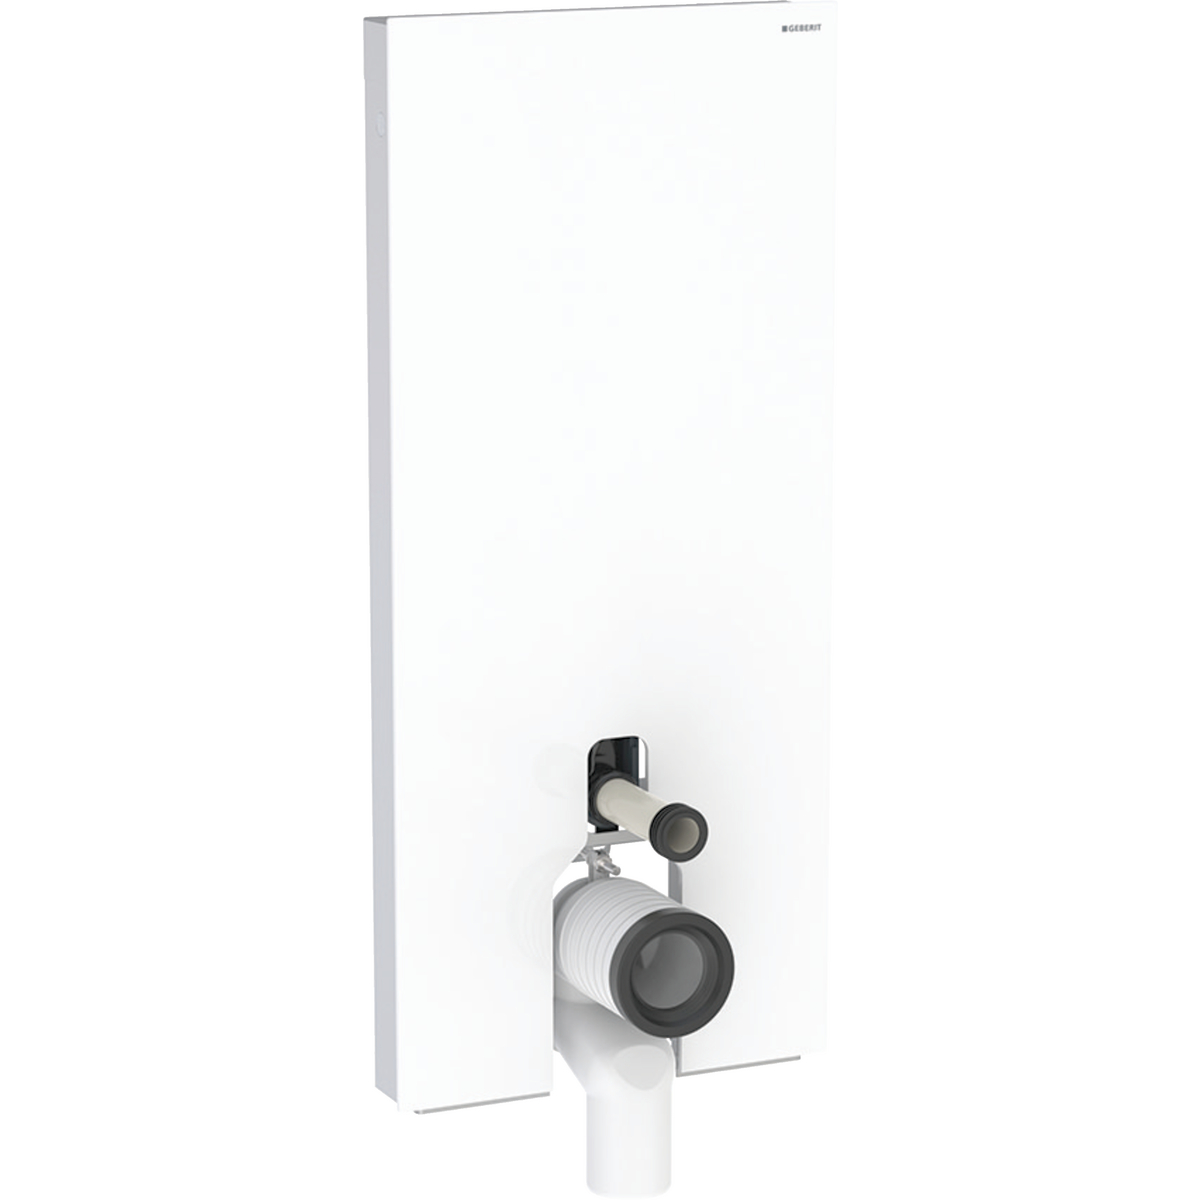 Monolith Plus Sanitärmodul für Stand-WC, 114 cm, Frontverkleidung aus Glas: Glas weiß, Aluminium